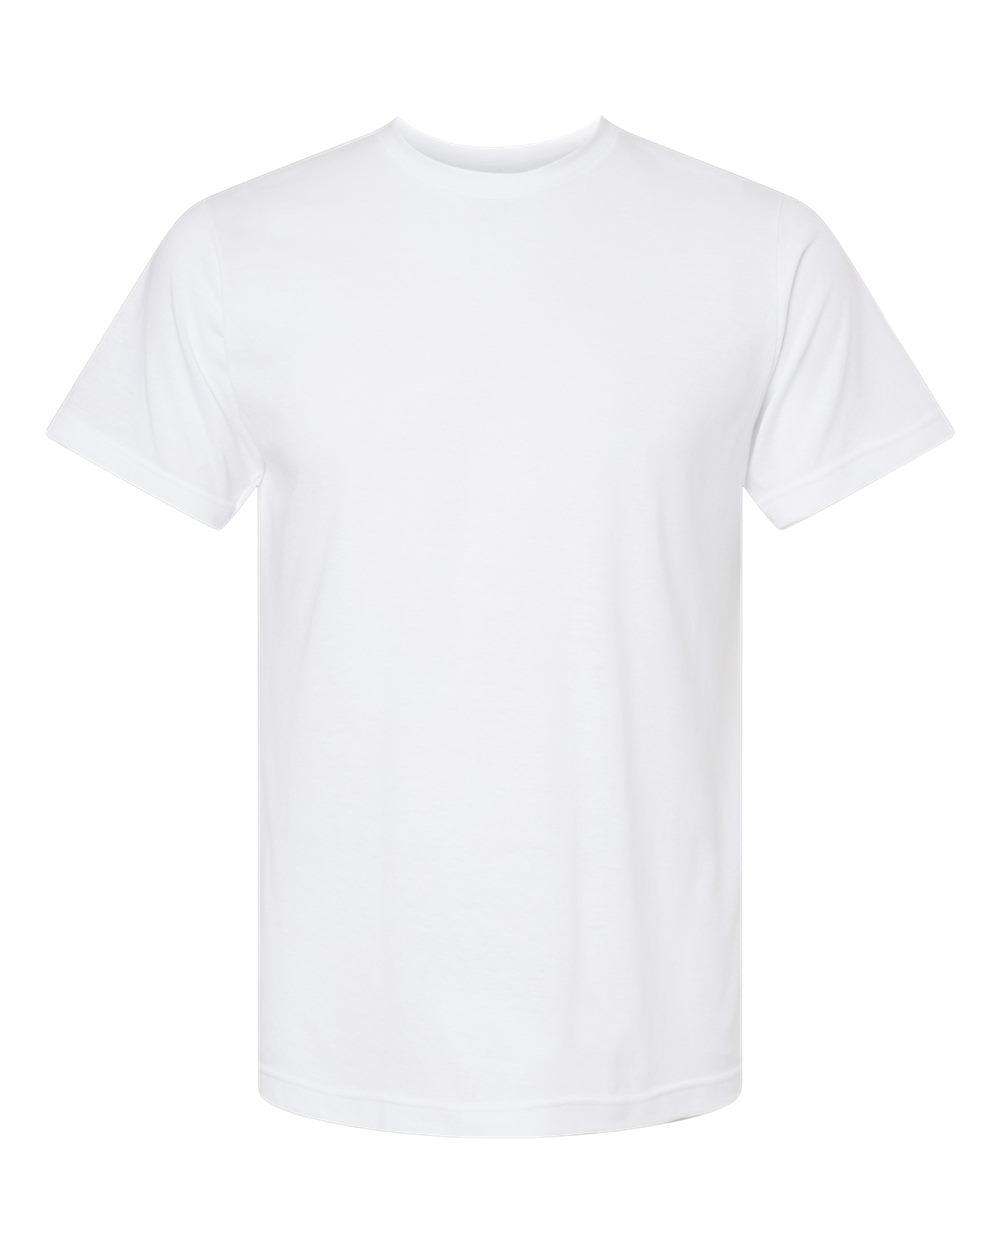 Deluxe Blend - Men's T-Shirt - M&O 3541